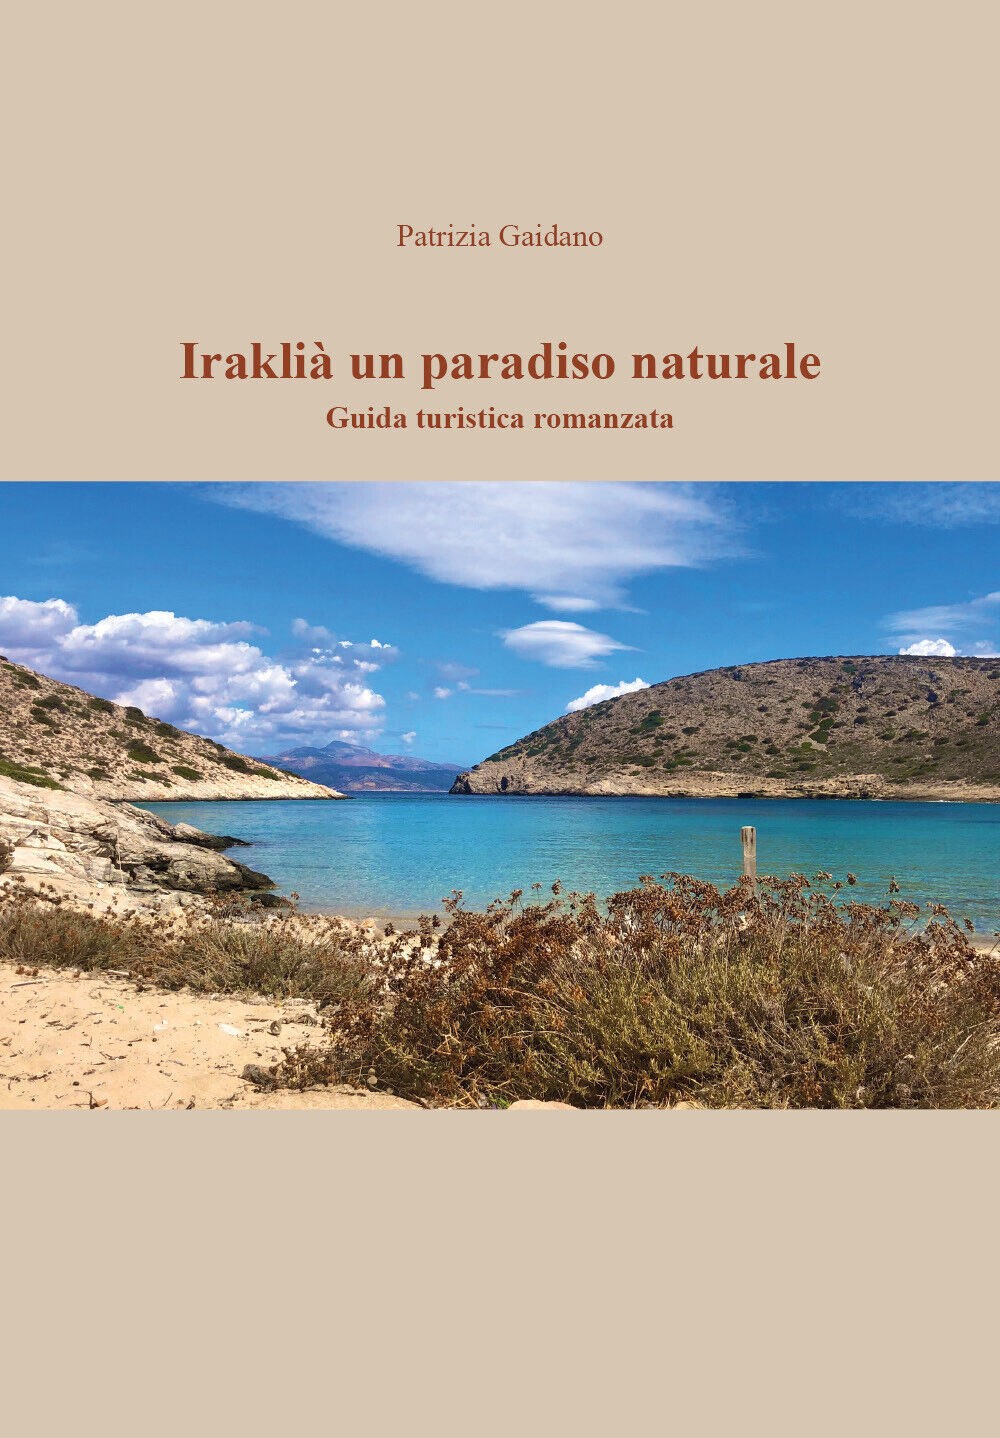 Irakli?, il Paradiso in un?isola di Patrizia Gaidano, 2020, Youcanprint libro usato